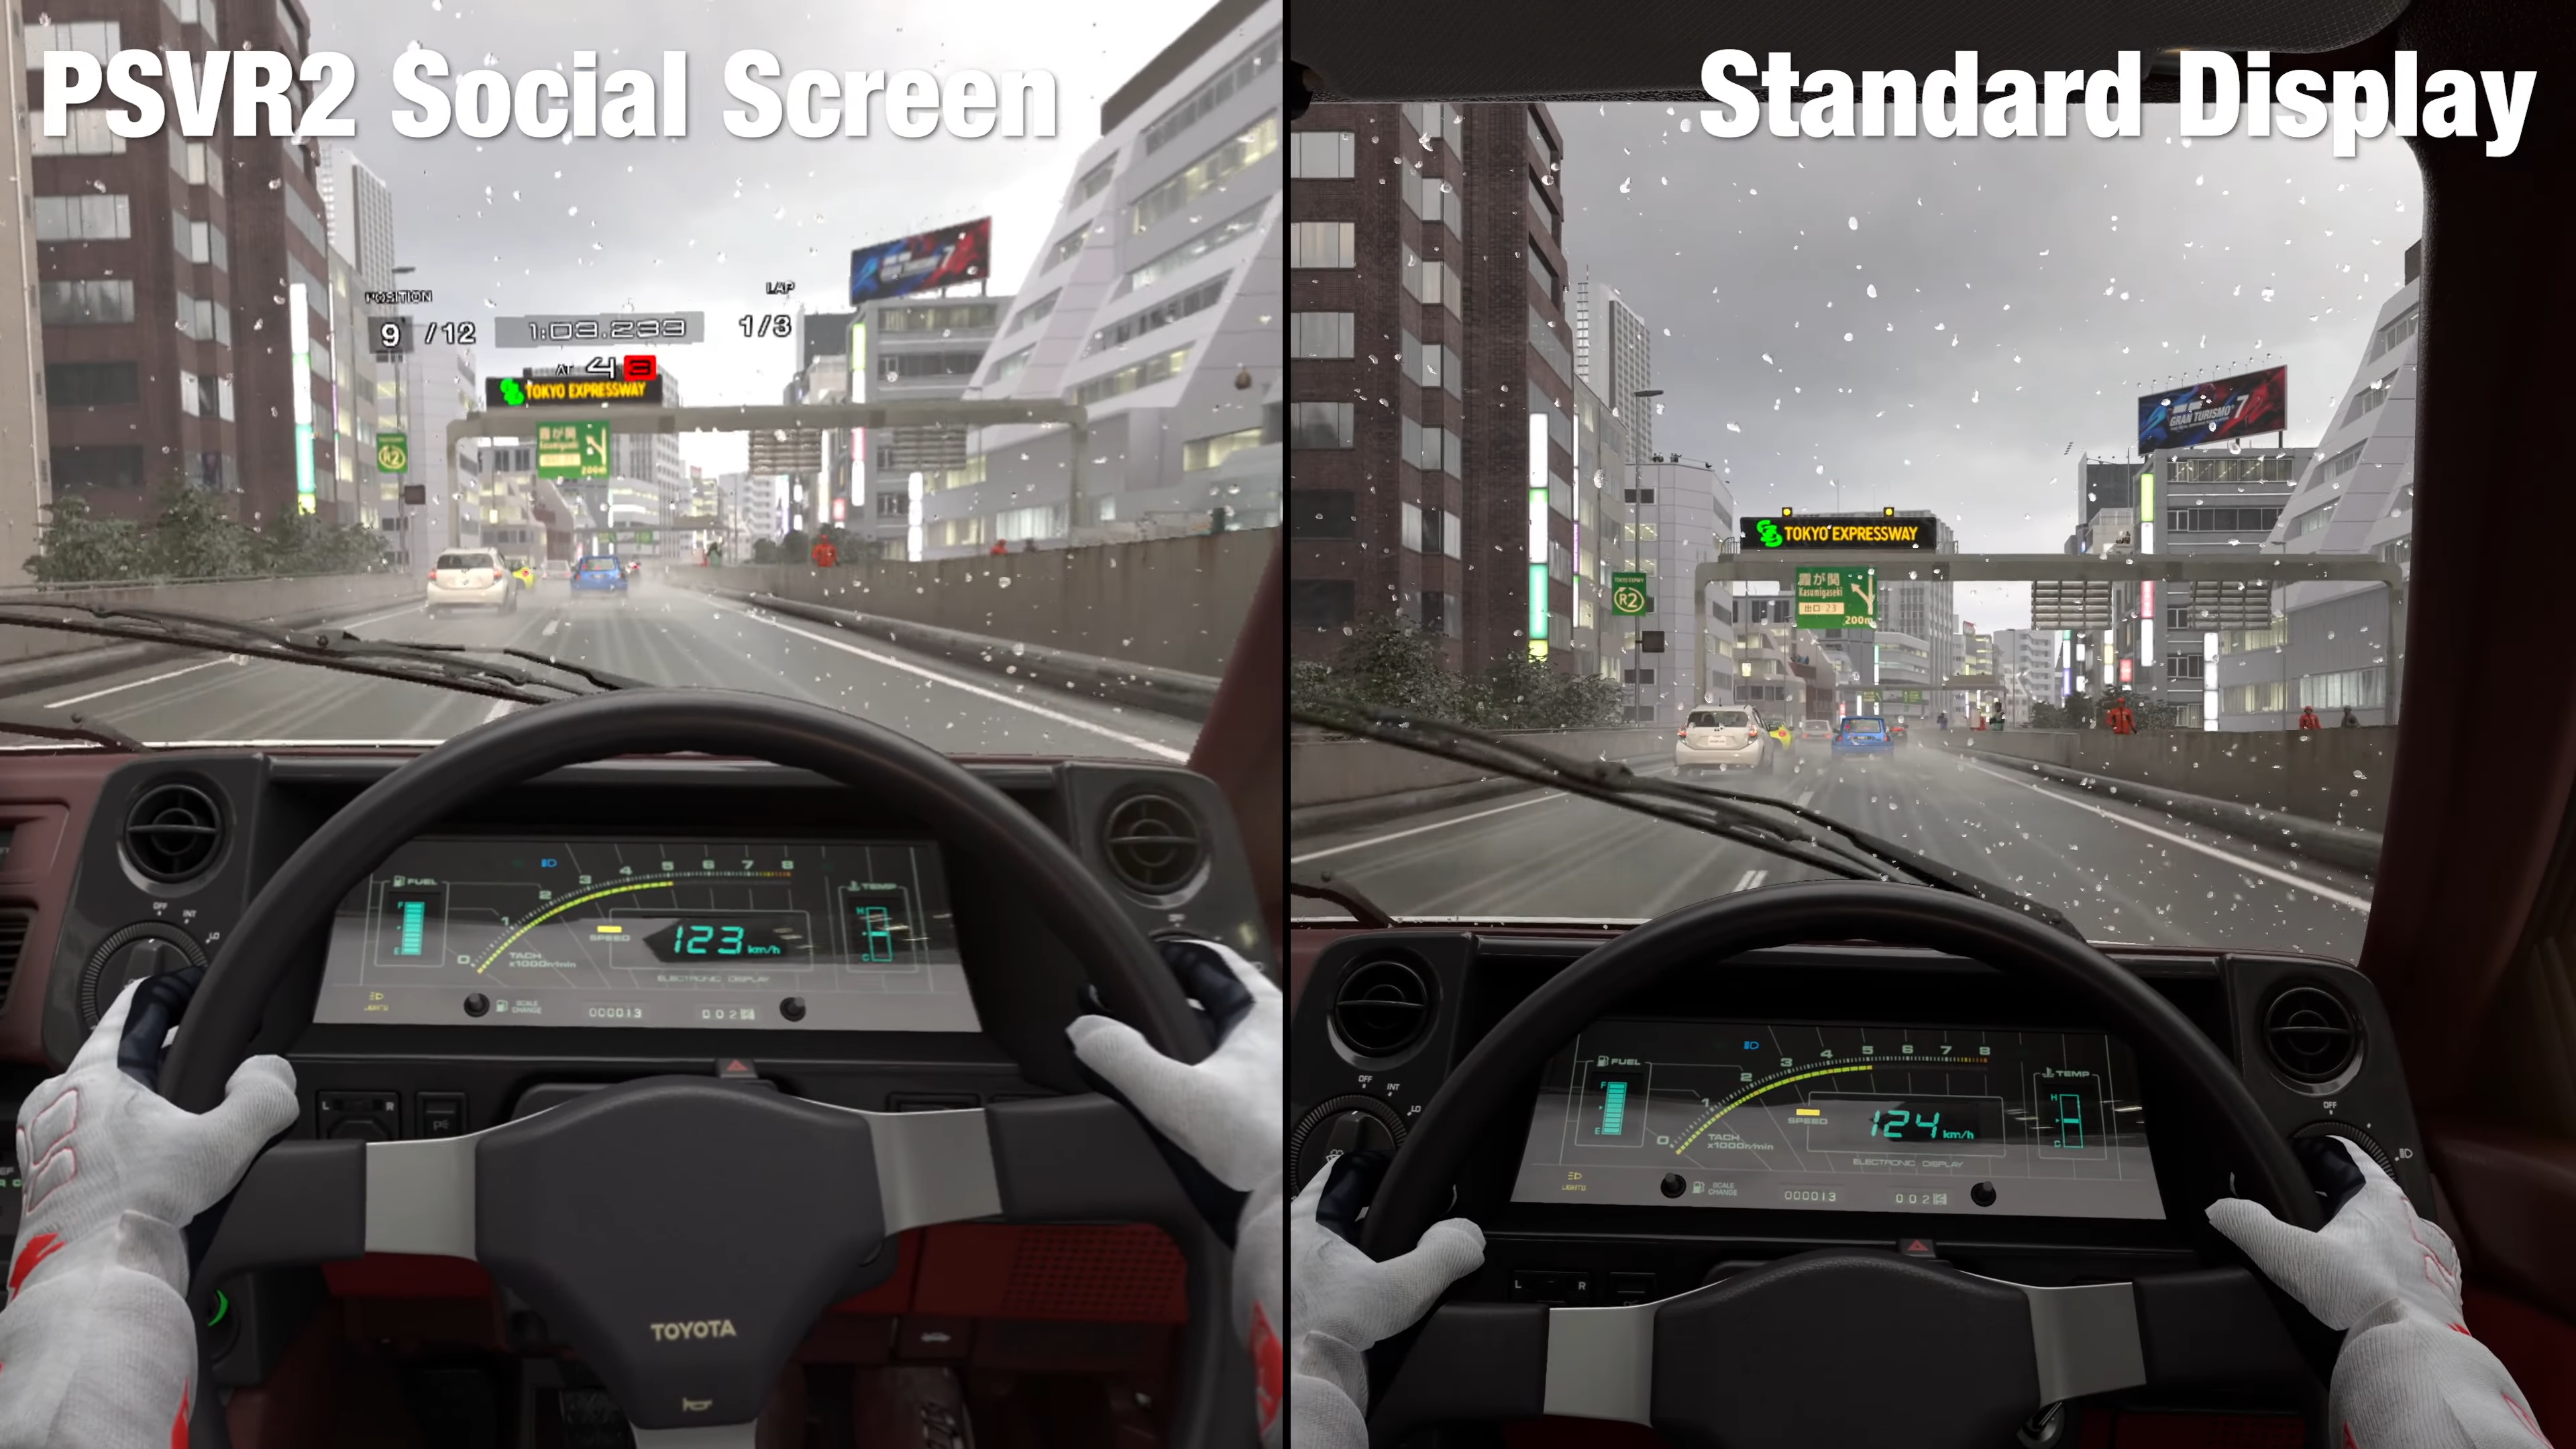 He probado Gran Turismo 7 en la realidad virtual de PS VR2 y PS5. De repente